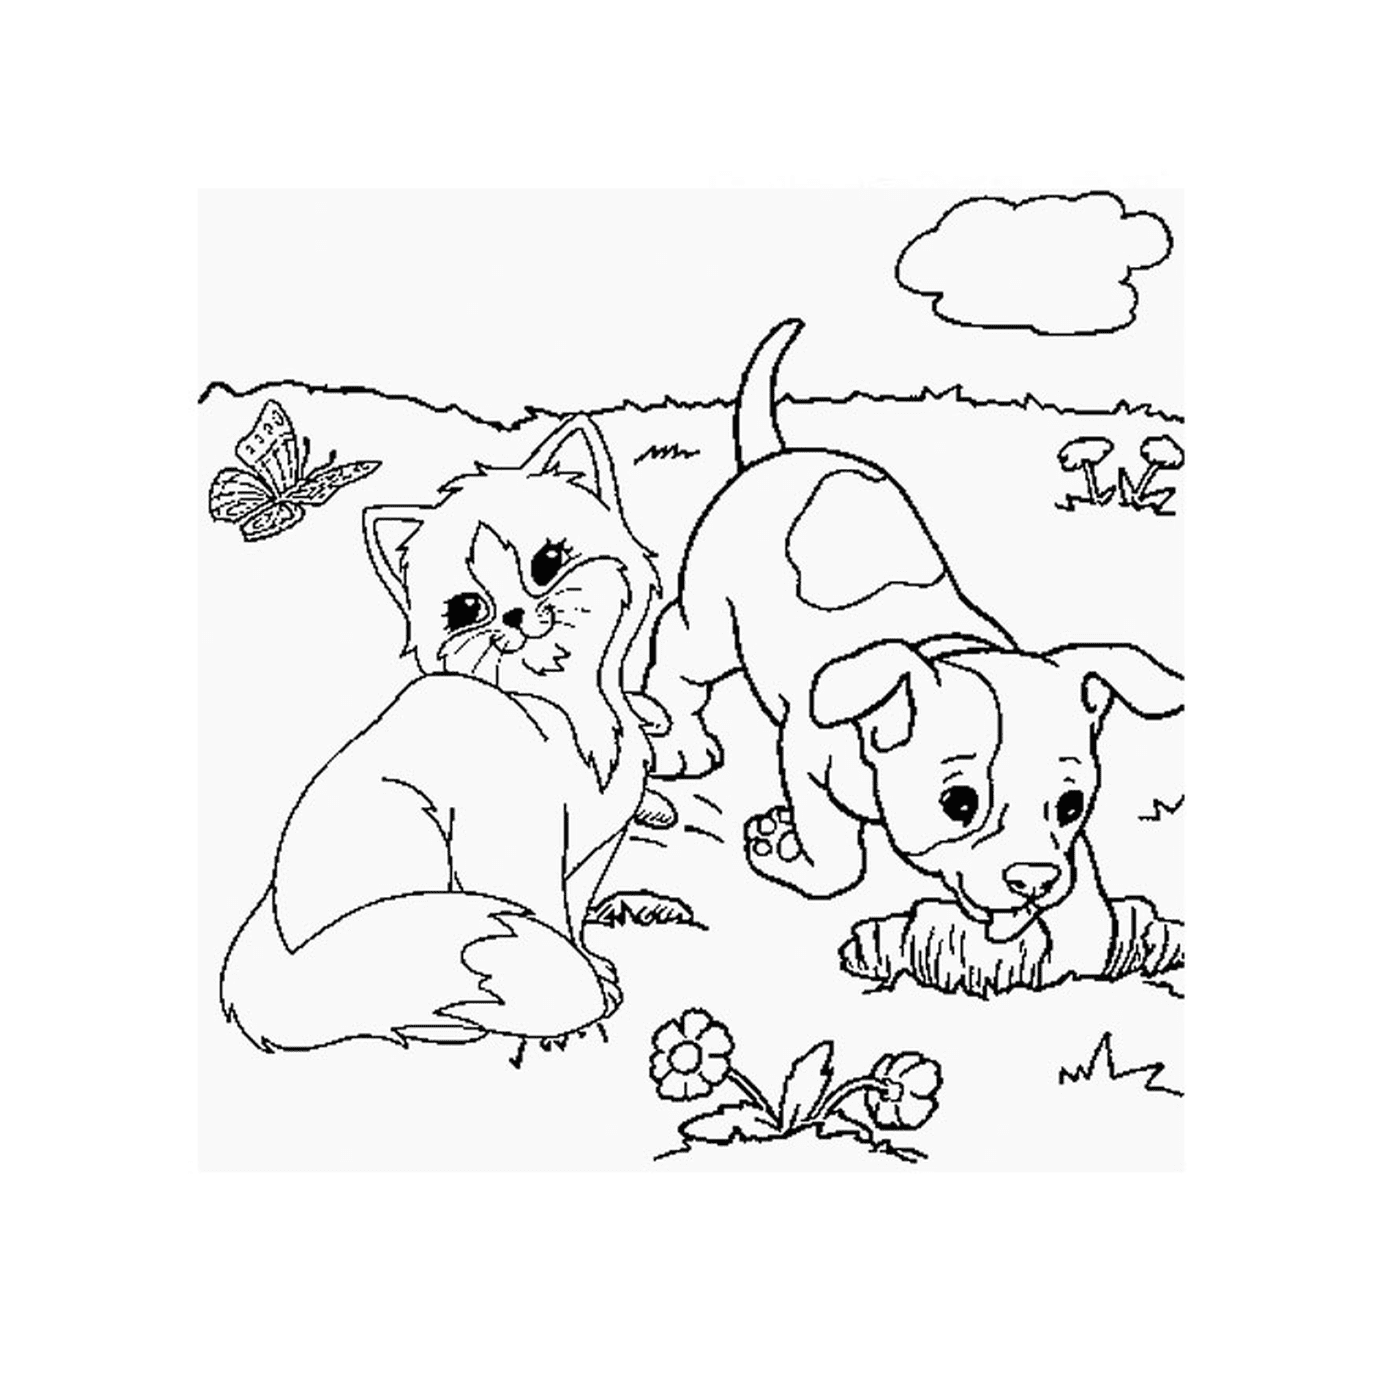  Un cachorro y un gatito juegan en la hierba 